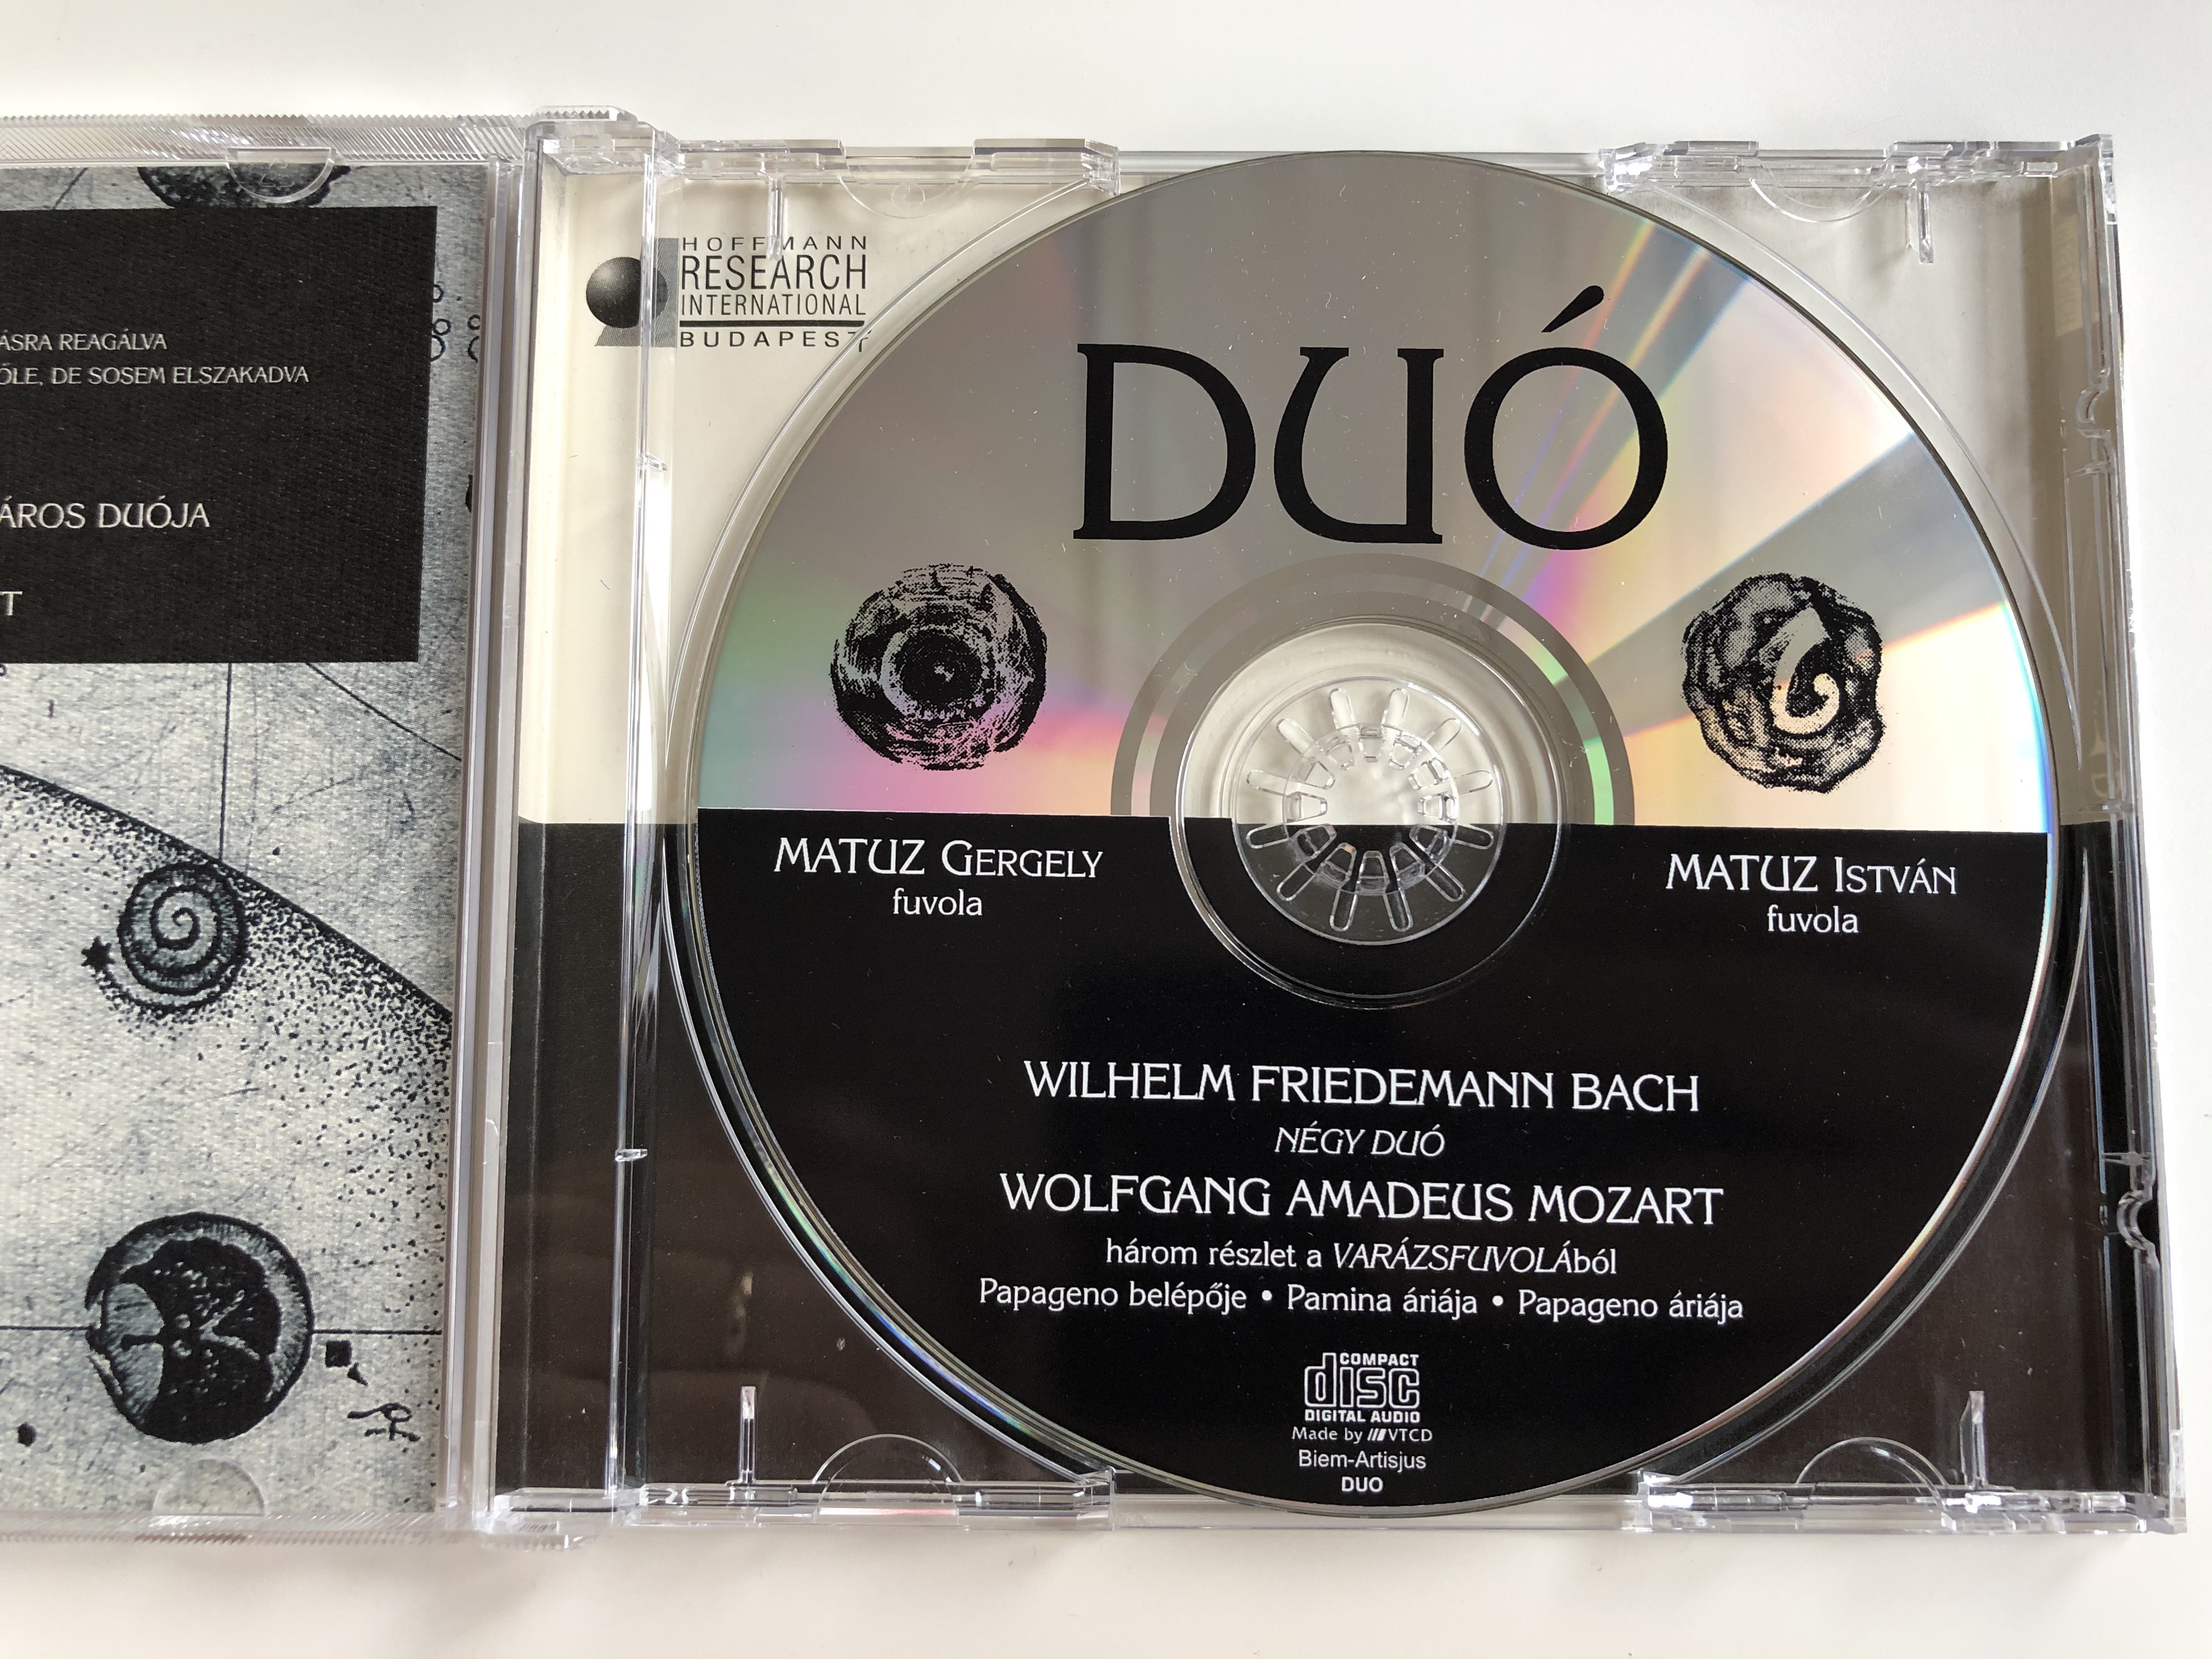 wilhelm-friedemann-bach-wolfgang-amadeus-mozart-flute-matuz-istvan-matuz-gergely-duo-hoffmann-reserch-international-audio-cd-2001-3-.jpg